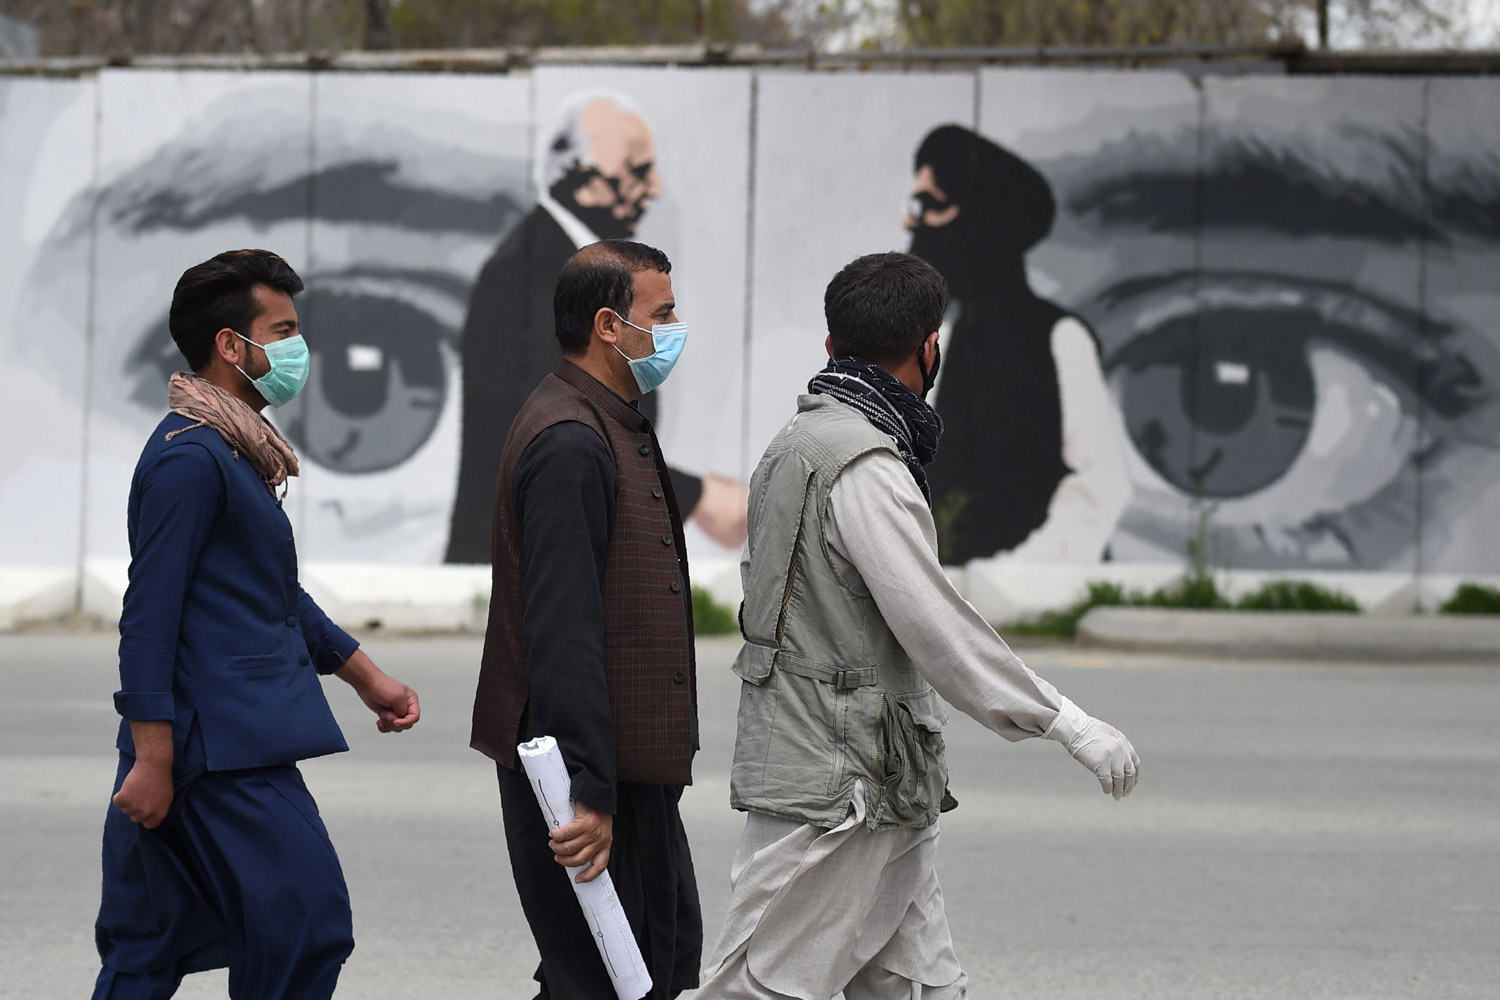 الأفغان يتحسسون أول خطوات نحو السلام بحذر